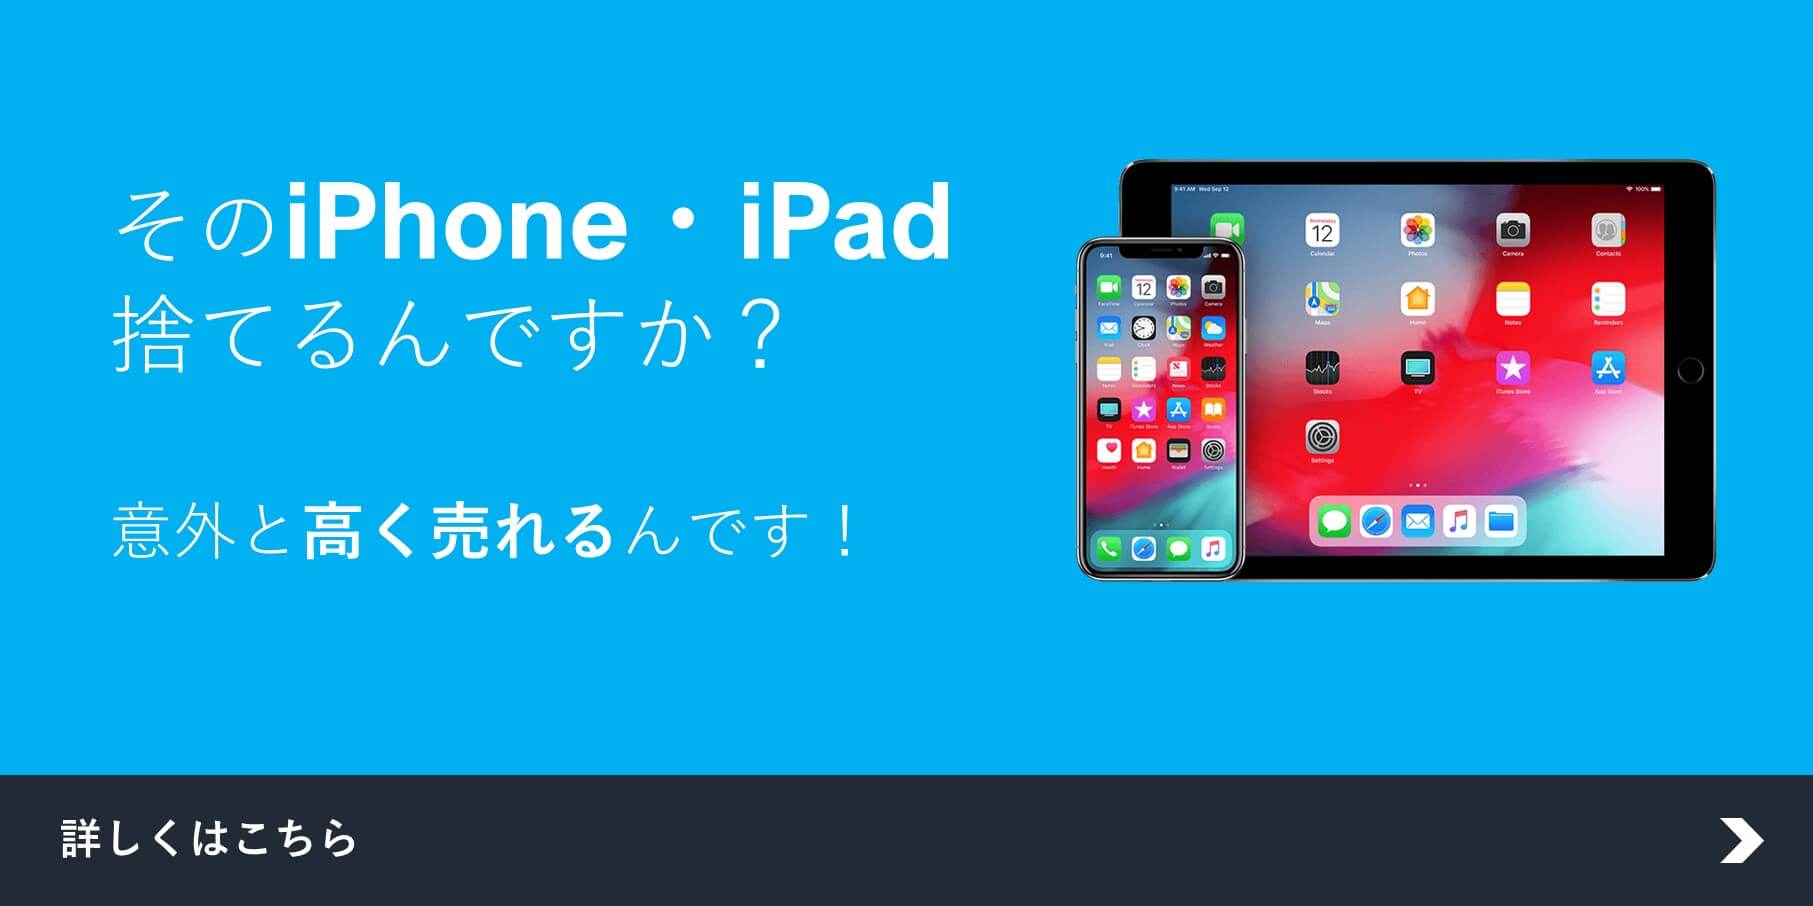 ☆iPhone・iPad高価買取実施中☆奈良香芝店(*^▽^*)